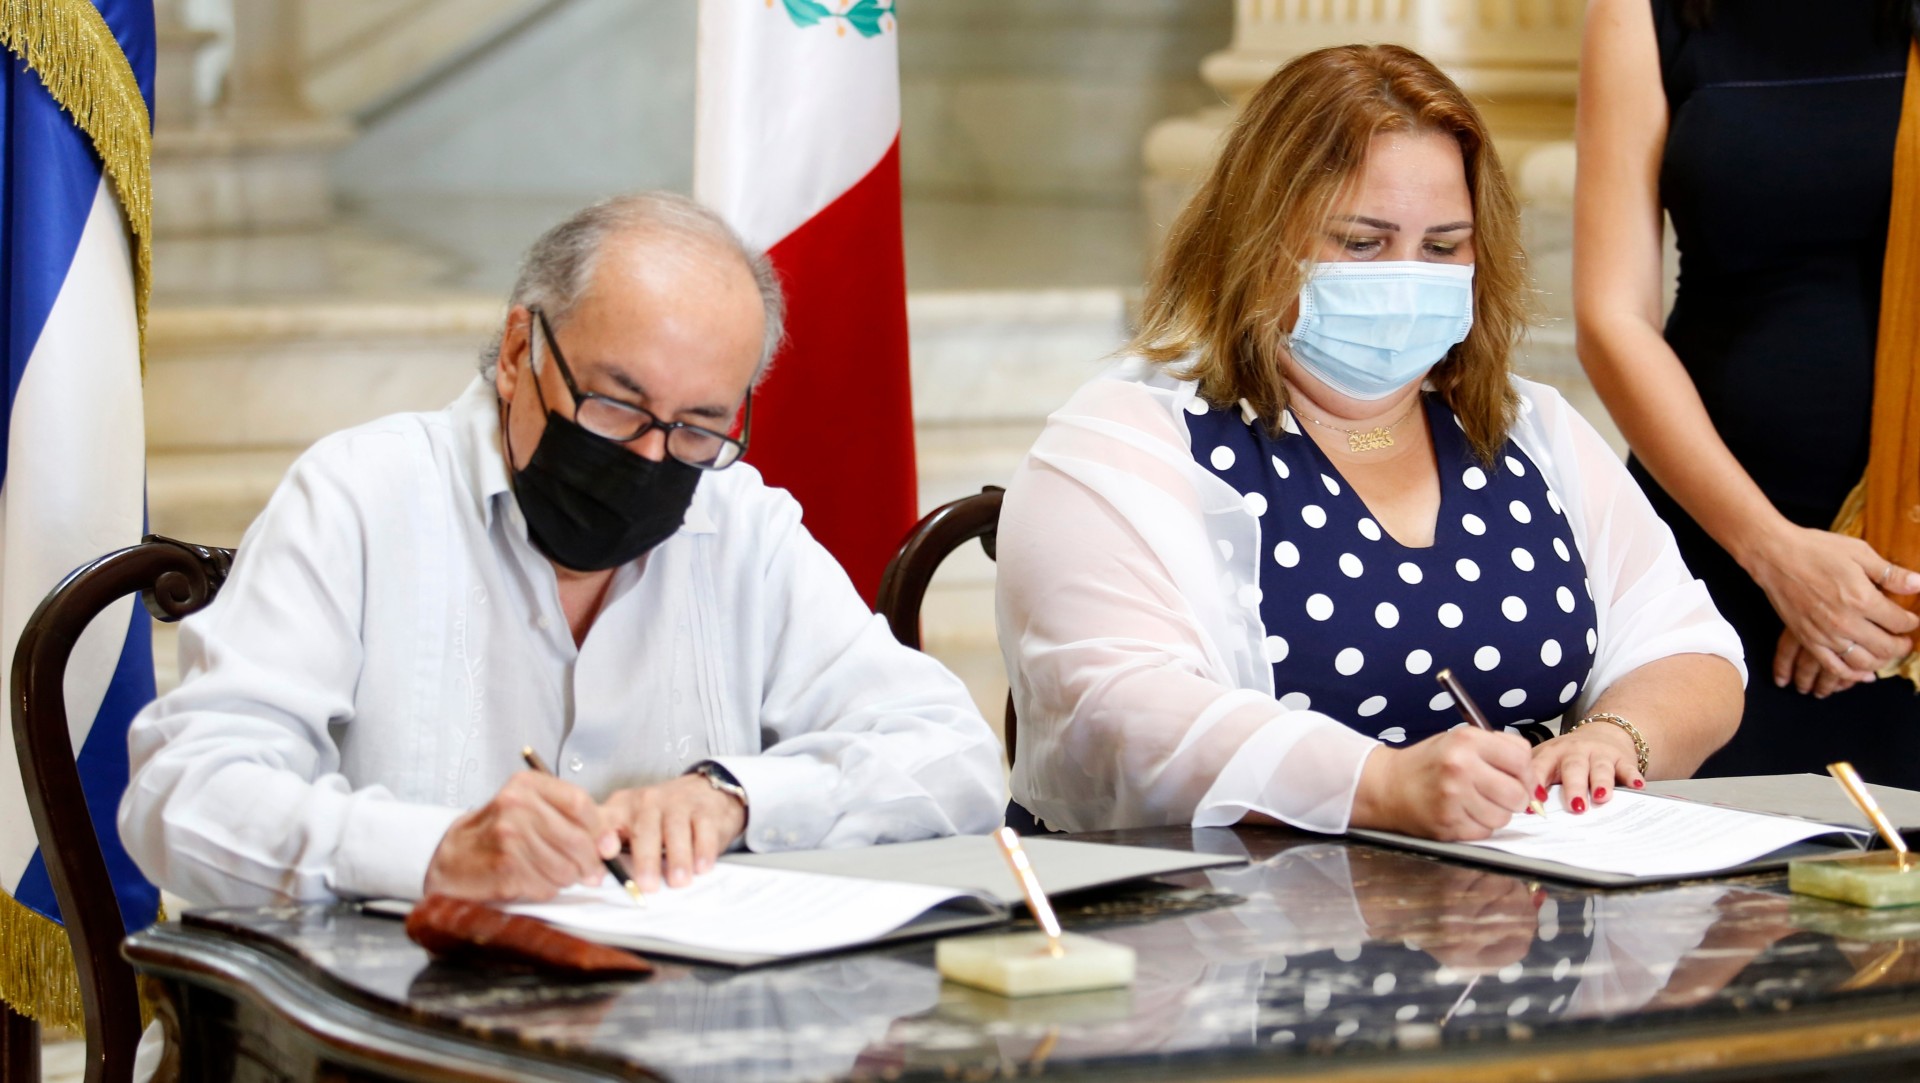 Ambos acuerdos permiten fortalecer la conservación y gestión de los archivos históricos de ambos países.